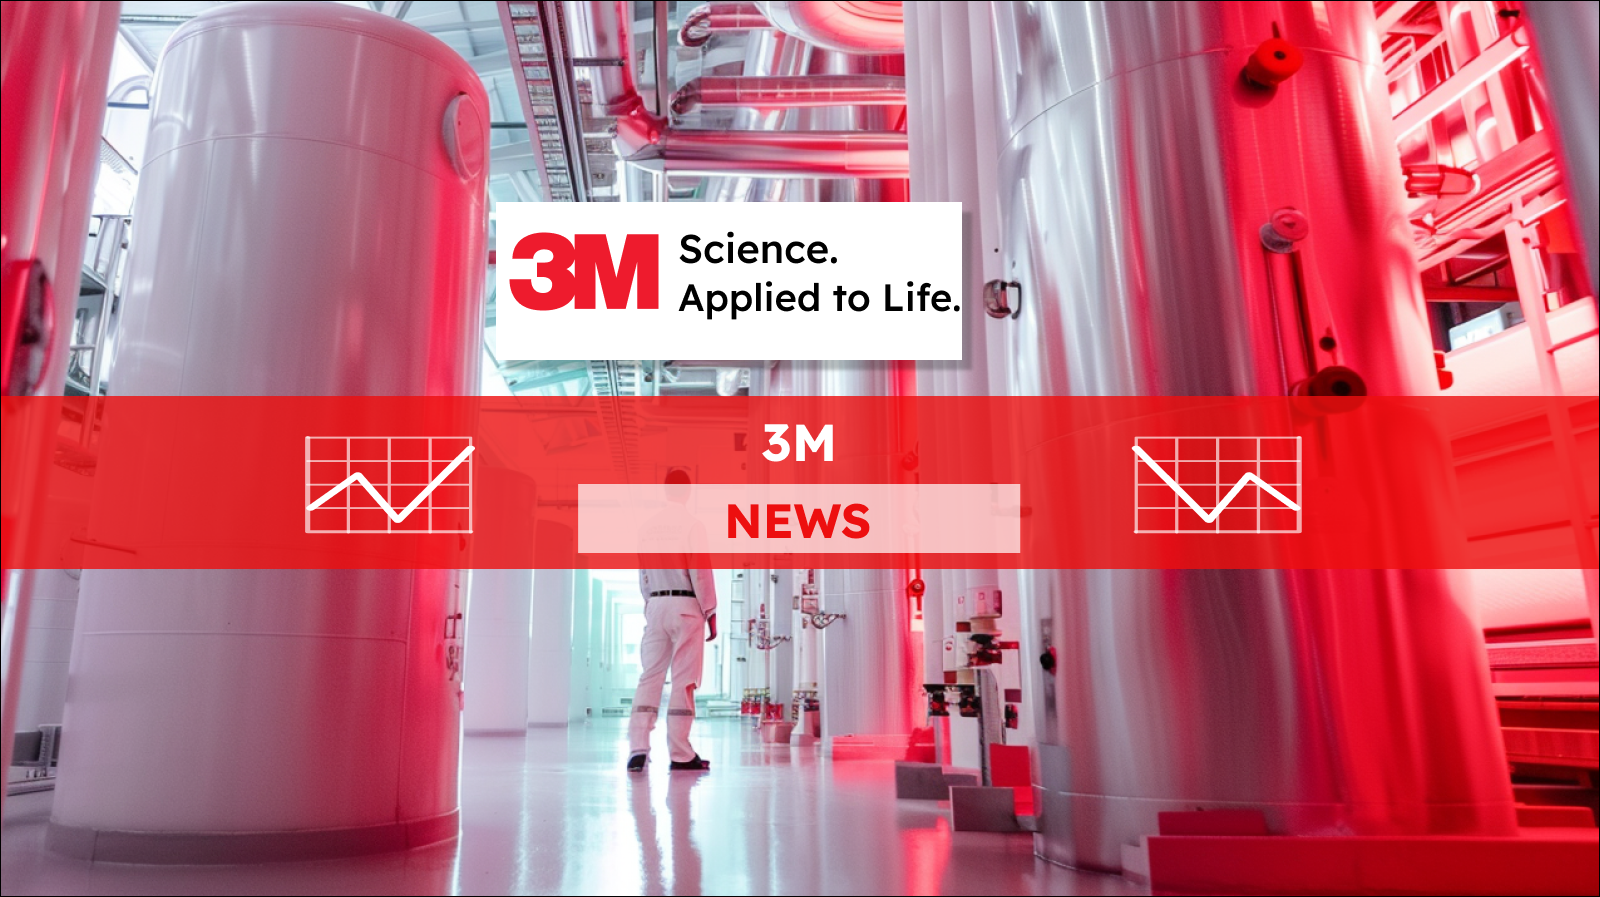 Ein Mitarbeiter in einem weißen Kittel in einem Labor, mit dem Slogan Science. Applied to Life. von 3M, mit einem 3M NEWS Banner